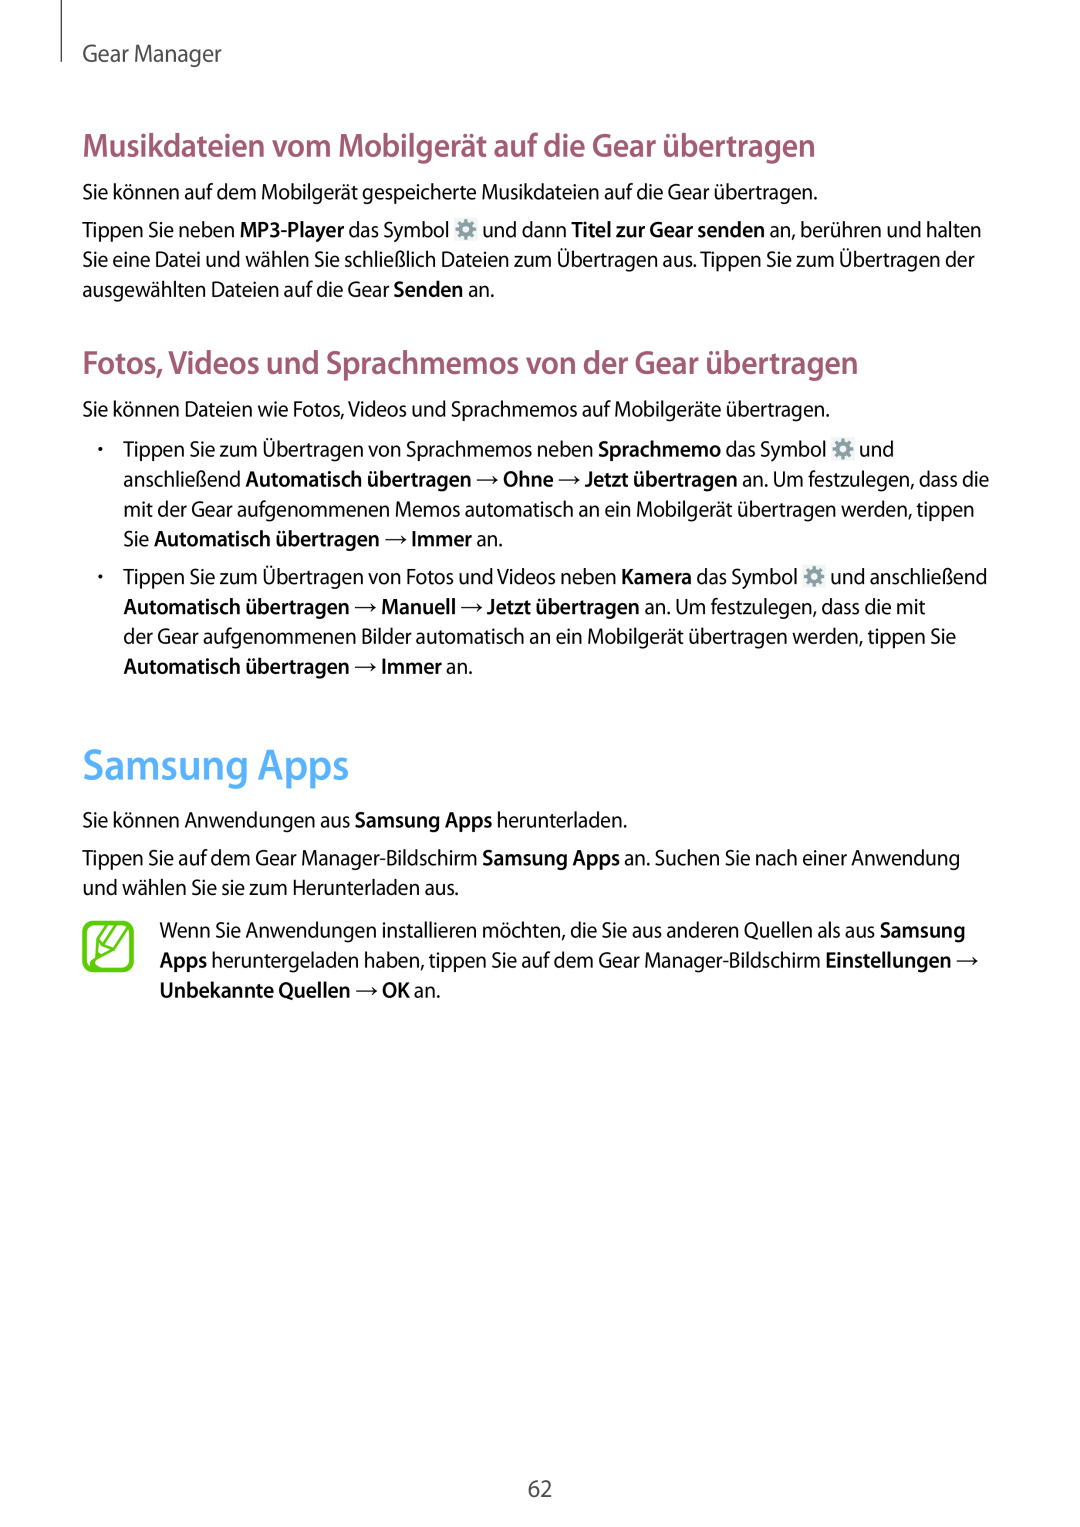 Samsung SM-V7000ZWATUR, SM-V7000ZOATUR Samsung Apps, Musikdateien vom Mobilgerät auf die Gear übertragen, Gear Manager 